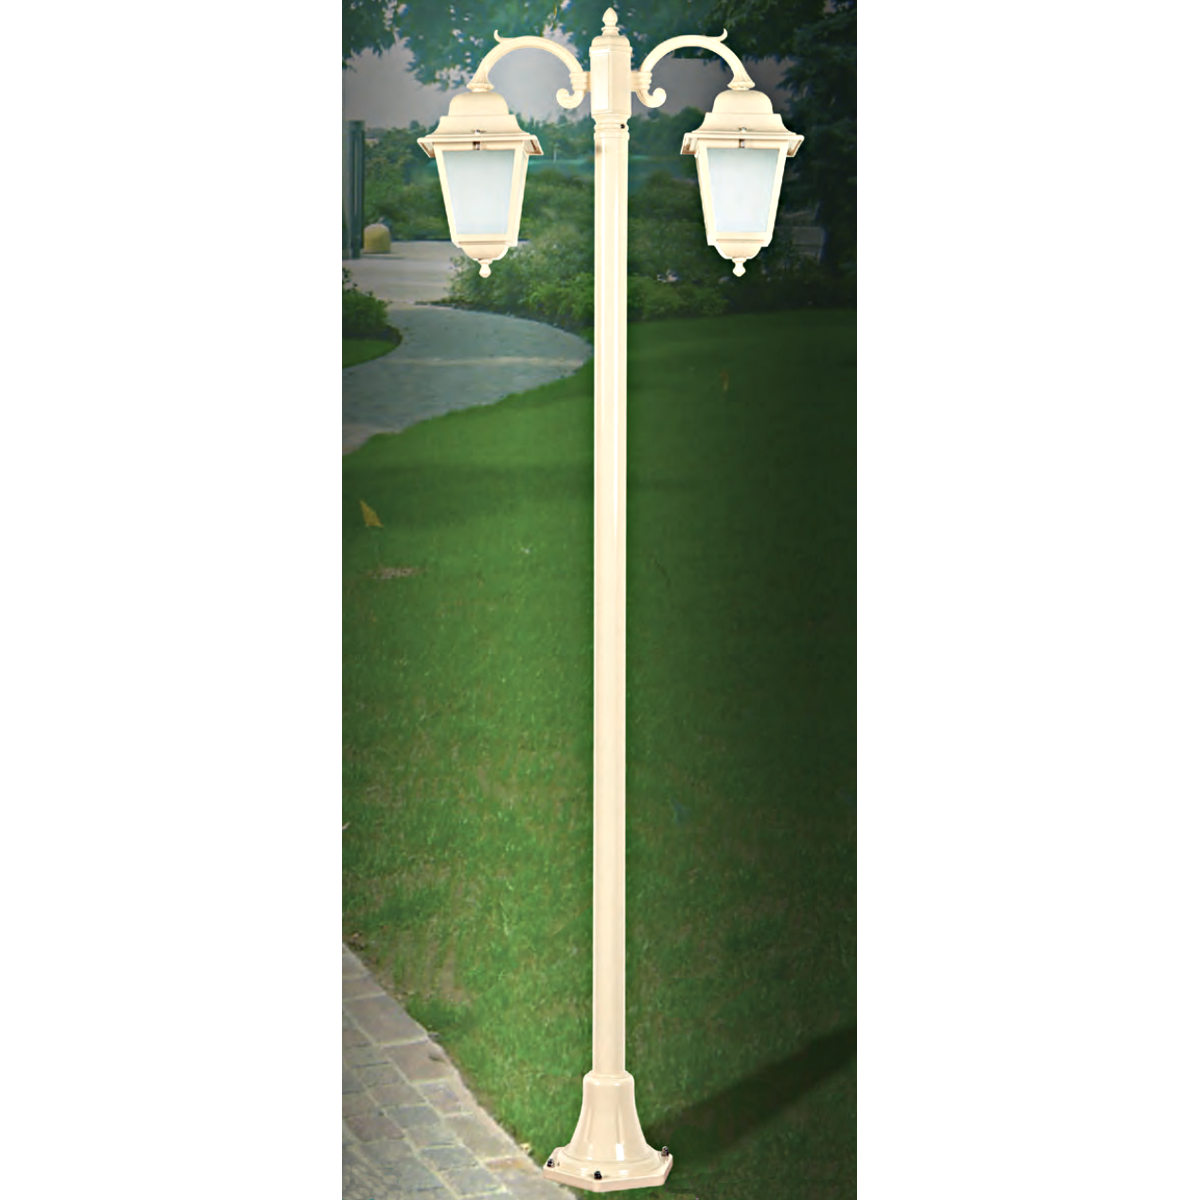 Italian Garden Lamp Post with Double Lanterns